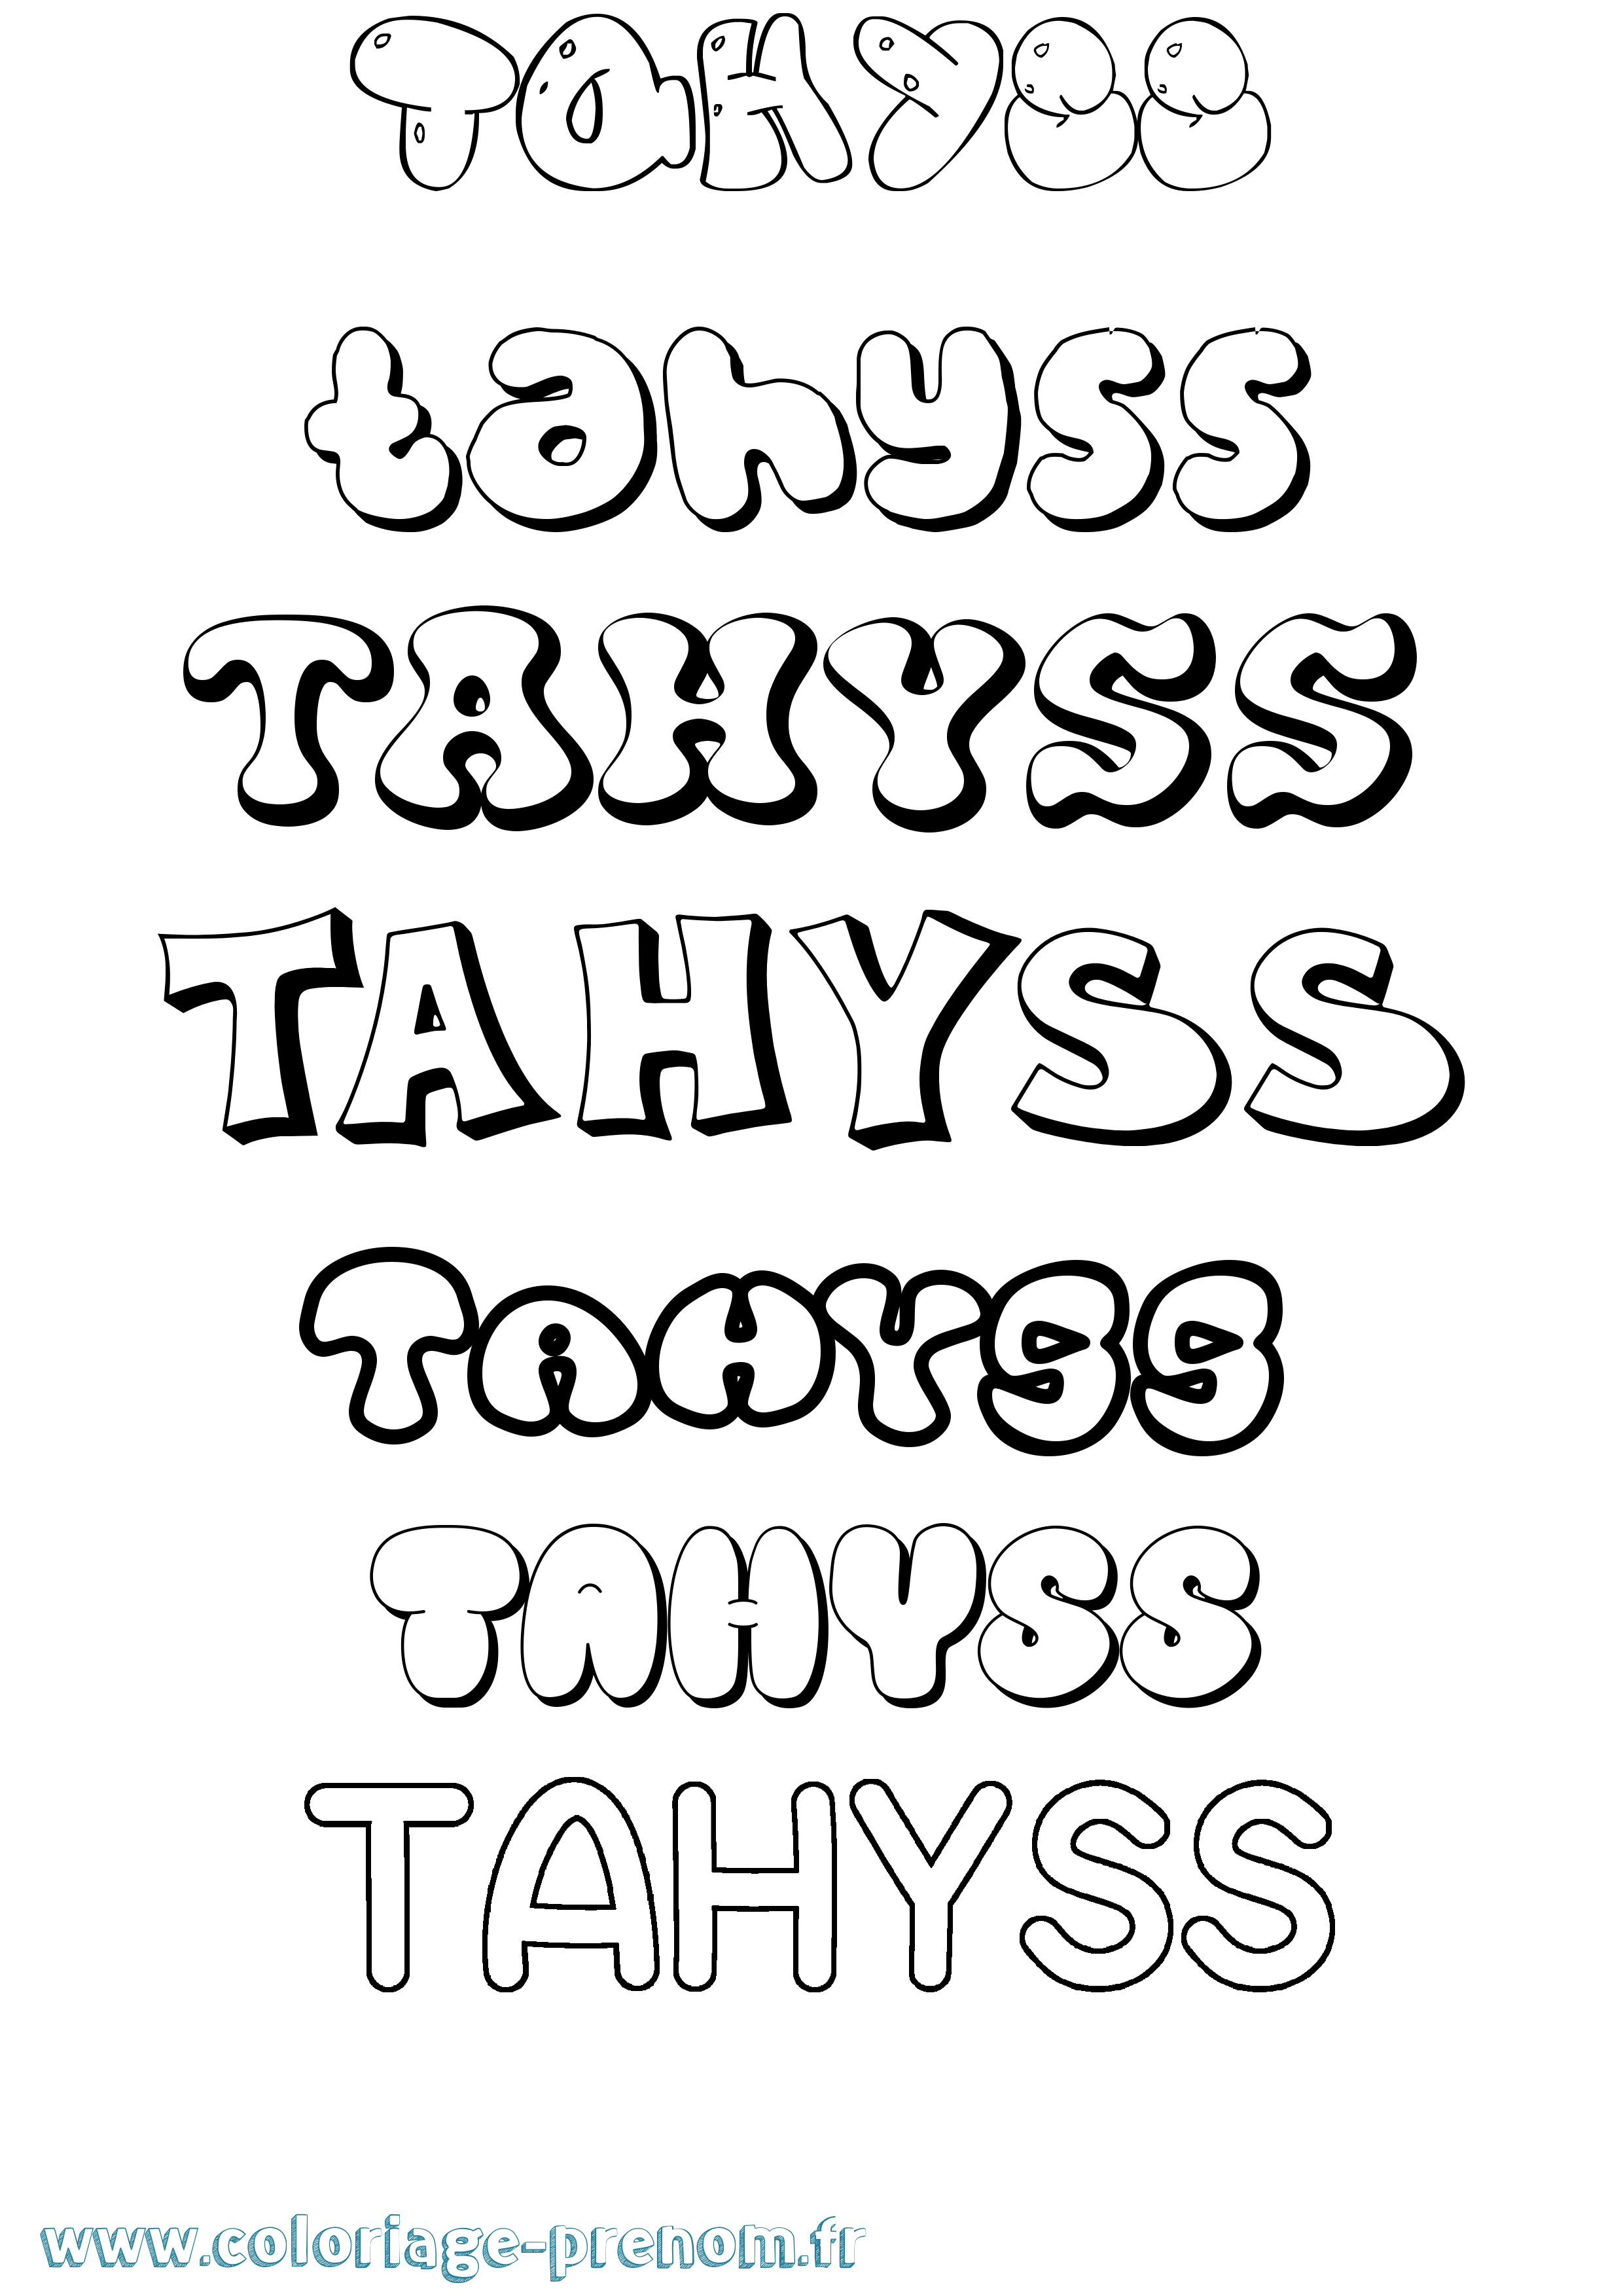 Coloriage prénom Tahyss Bubble